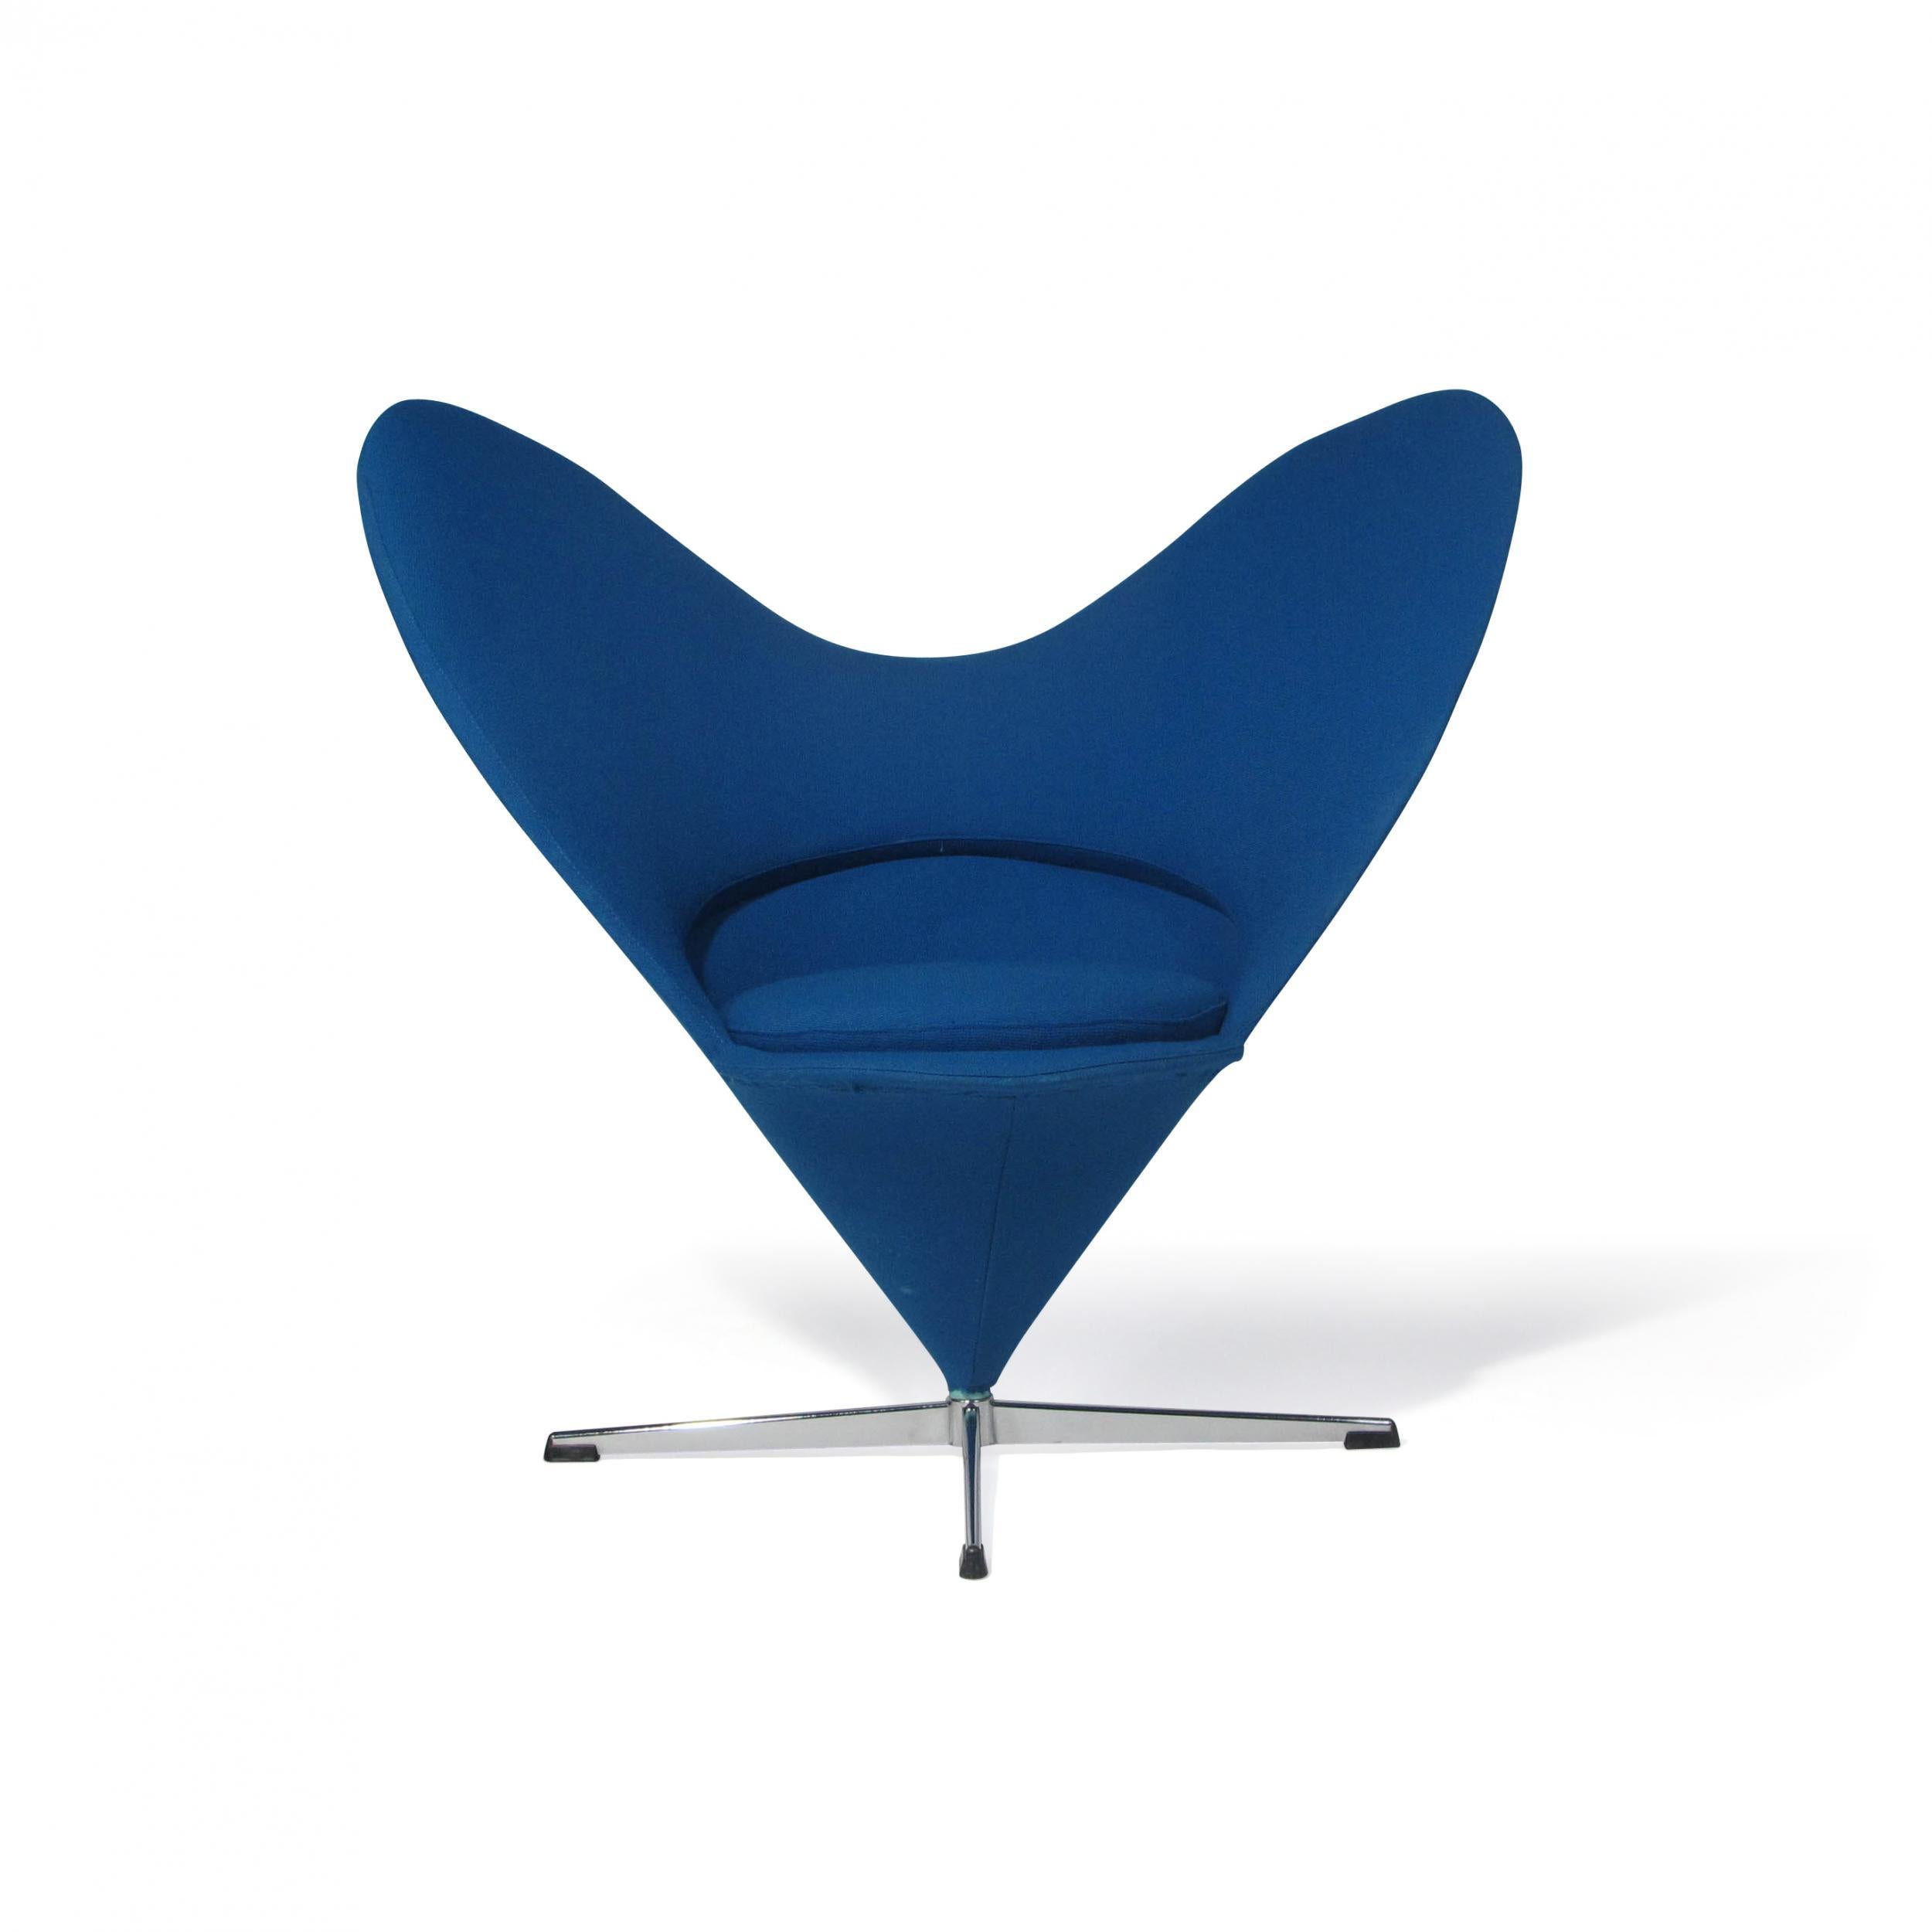 Dänischer Stuhl, entworfen von Verner Panton für Gebrüder Nehl, Modell Heart K3, um 1959, Deutschland. Der Stuhl ist mit dem originalen blauen Wollstoff gepolstert und steht auf einem Stahlsockel.